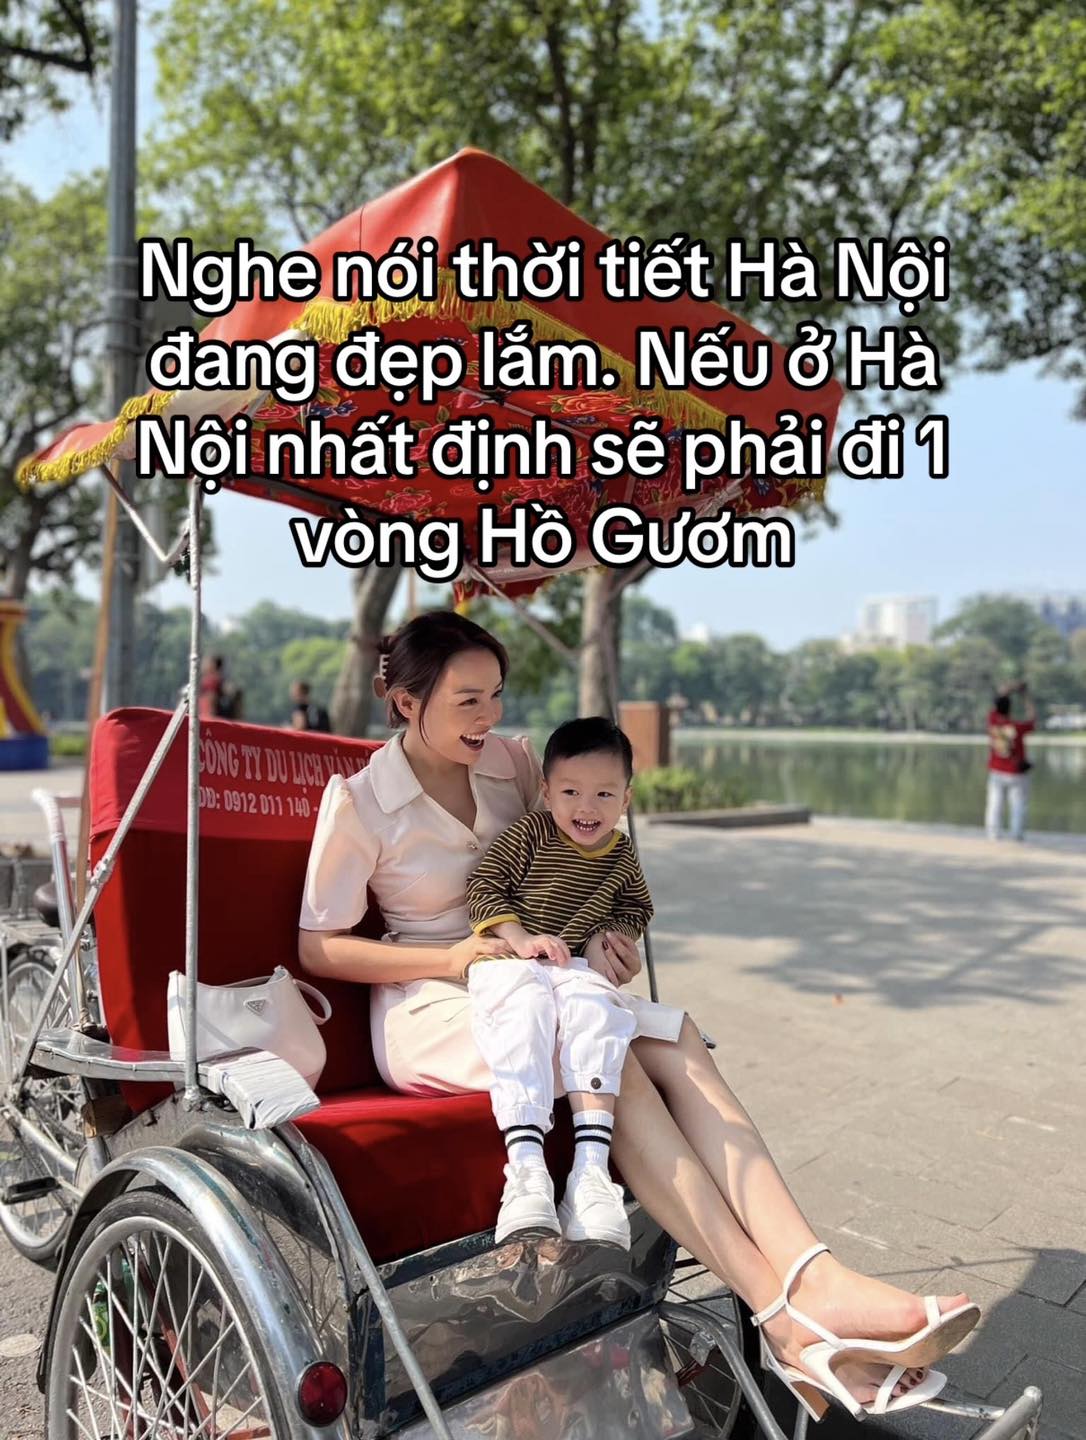 Nghỉ Tết dương đi đâu, chơi gì ở Hà Nội và TP HCM "phiên bản nhà có con nhỏ"?- Ảnh 1.